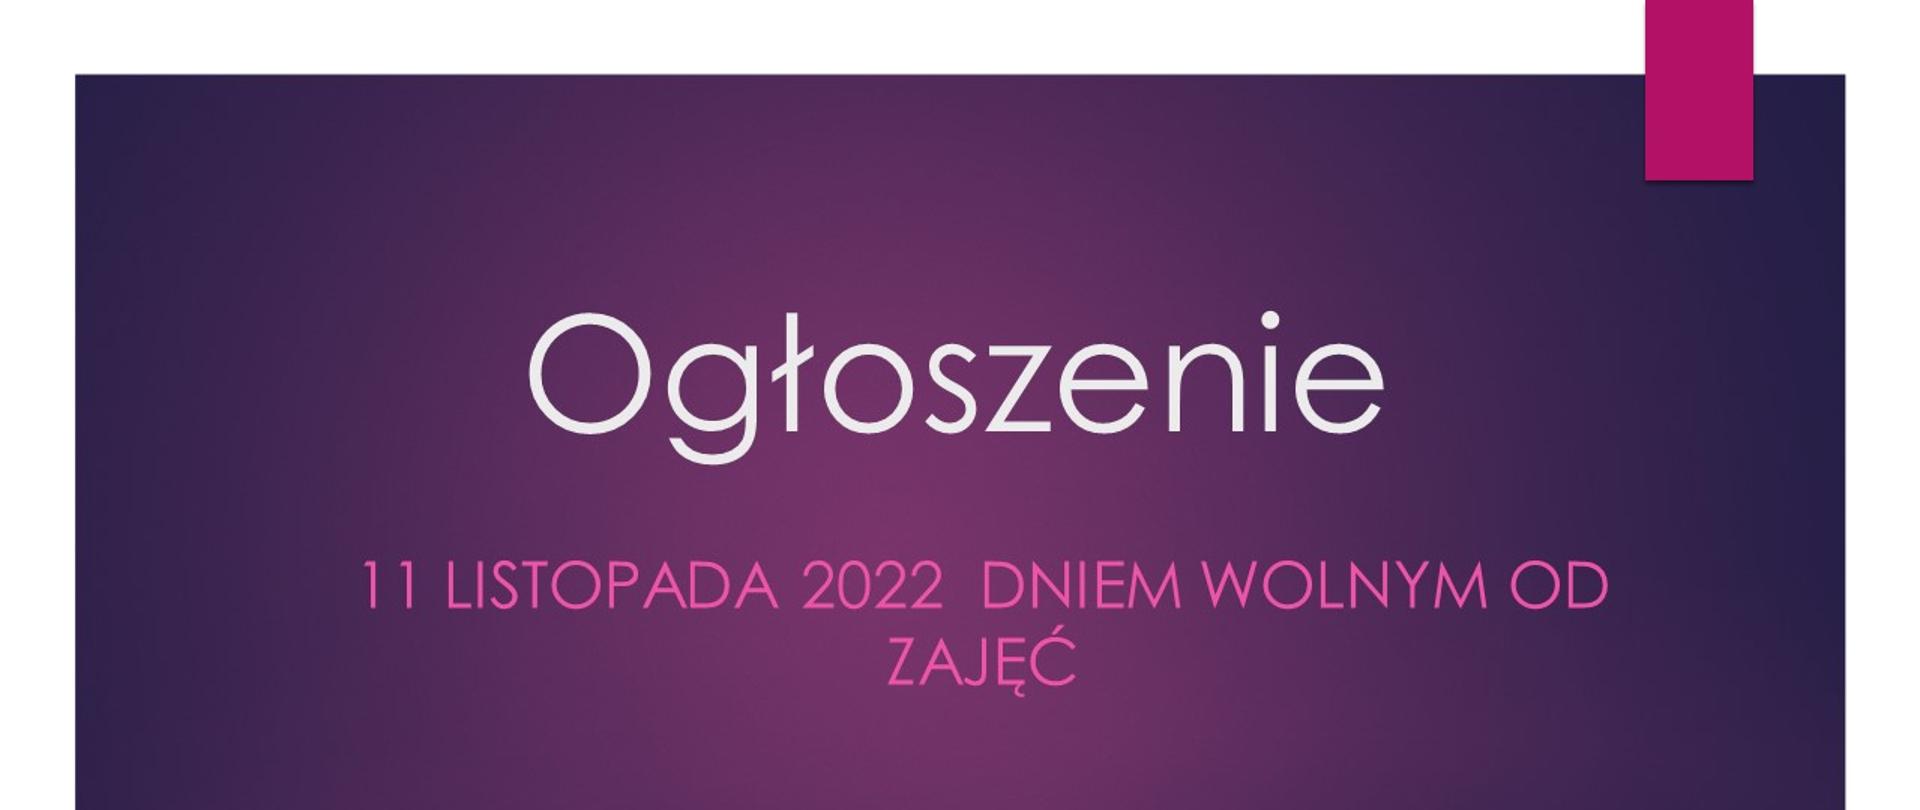 Plakat tło fioletowe z białym napisem OGŁOSZENIE i purpurowym 11 listopada 2022 r. dniem wolnym od zajęć